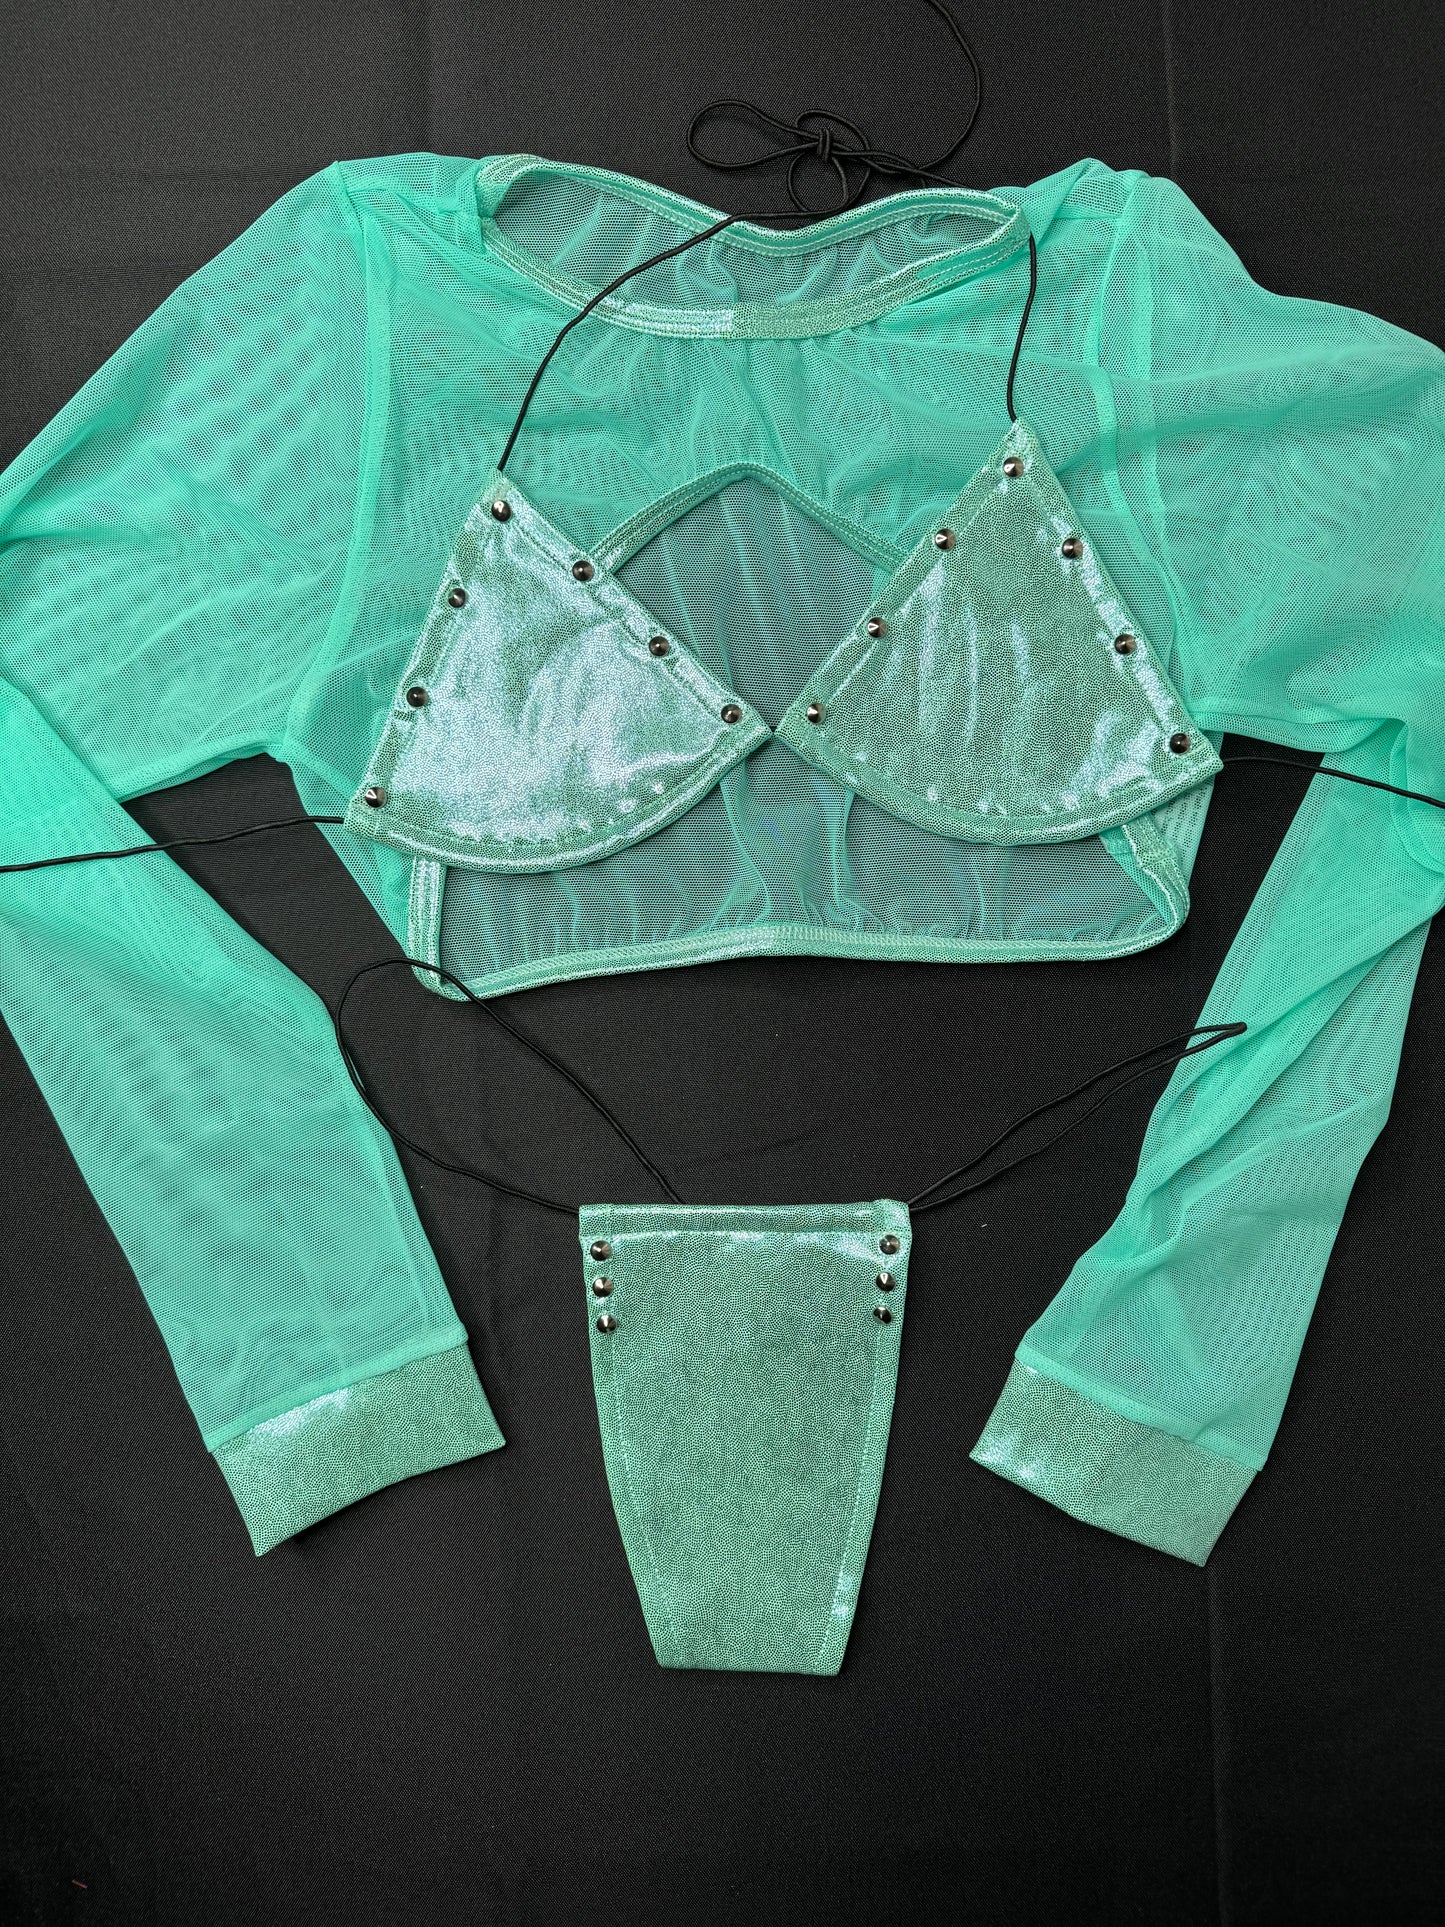 Aqua/Mint Three-Piece Exotic Dancer Outfit